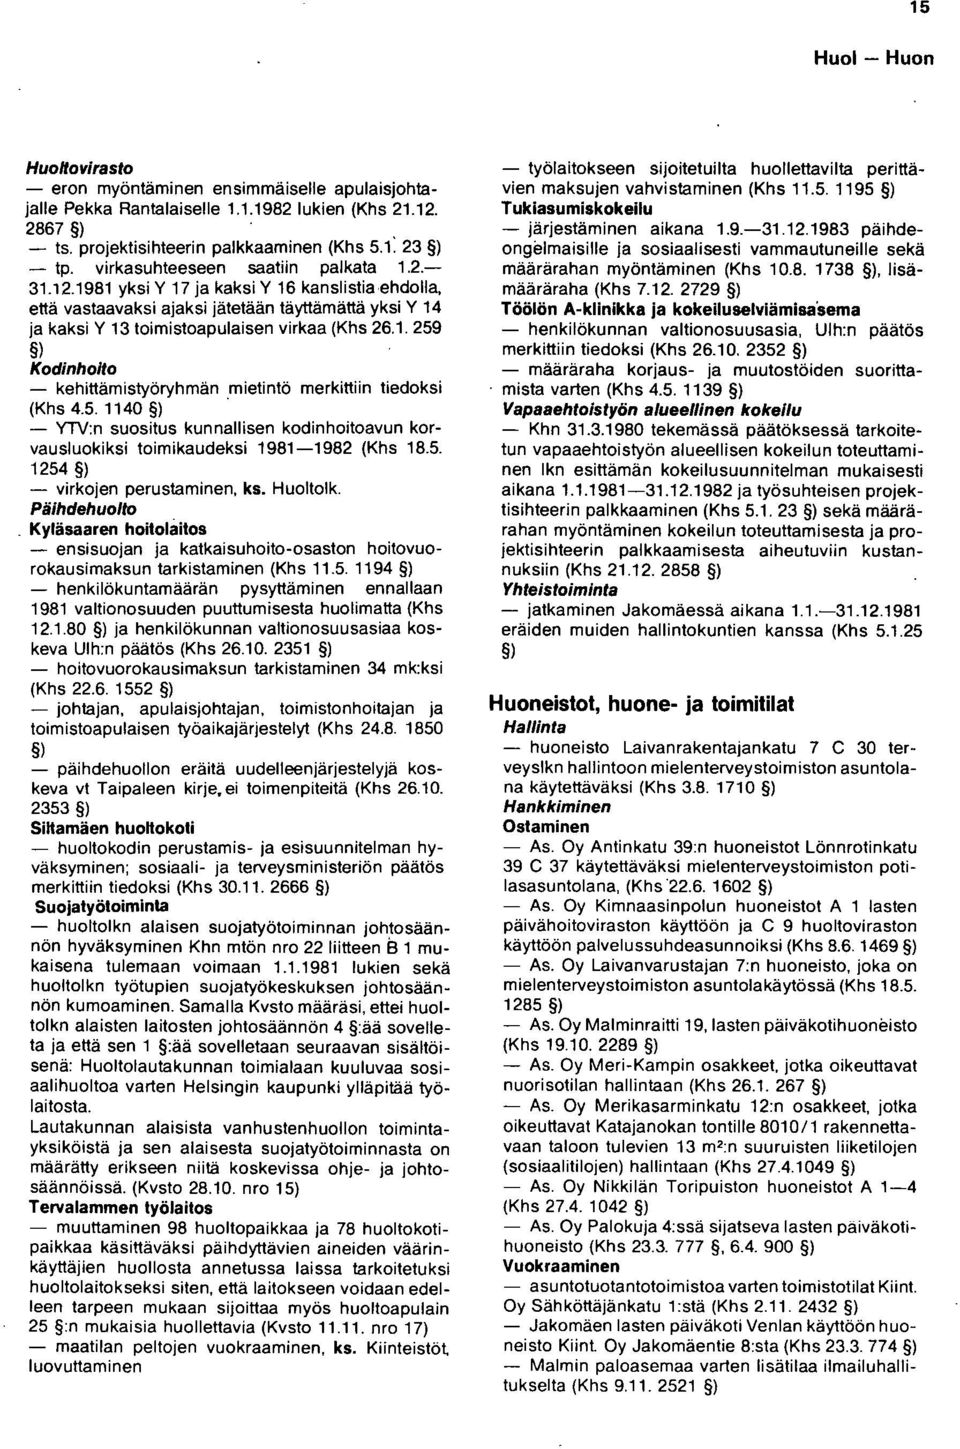 5. 1140. - YlV:n suositus kunnallisen kodinhoitoavun korvausluokiksi toimikaudeksi 1981-1982 (Khs 18.5. 1254 - virkojen perustaminen, ks. Huoltolk. Päihdehuolto.